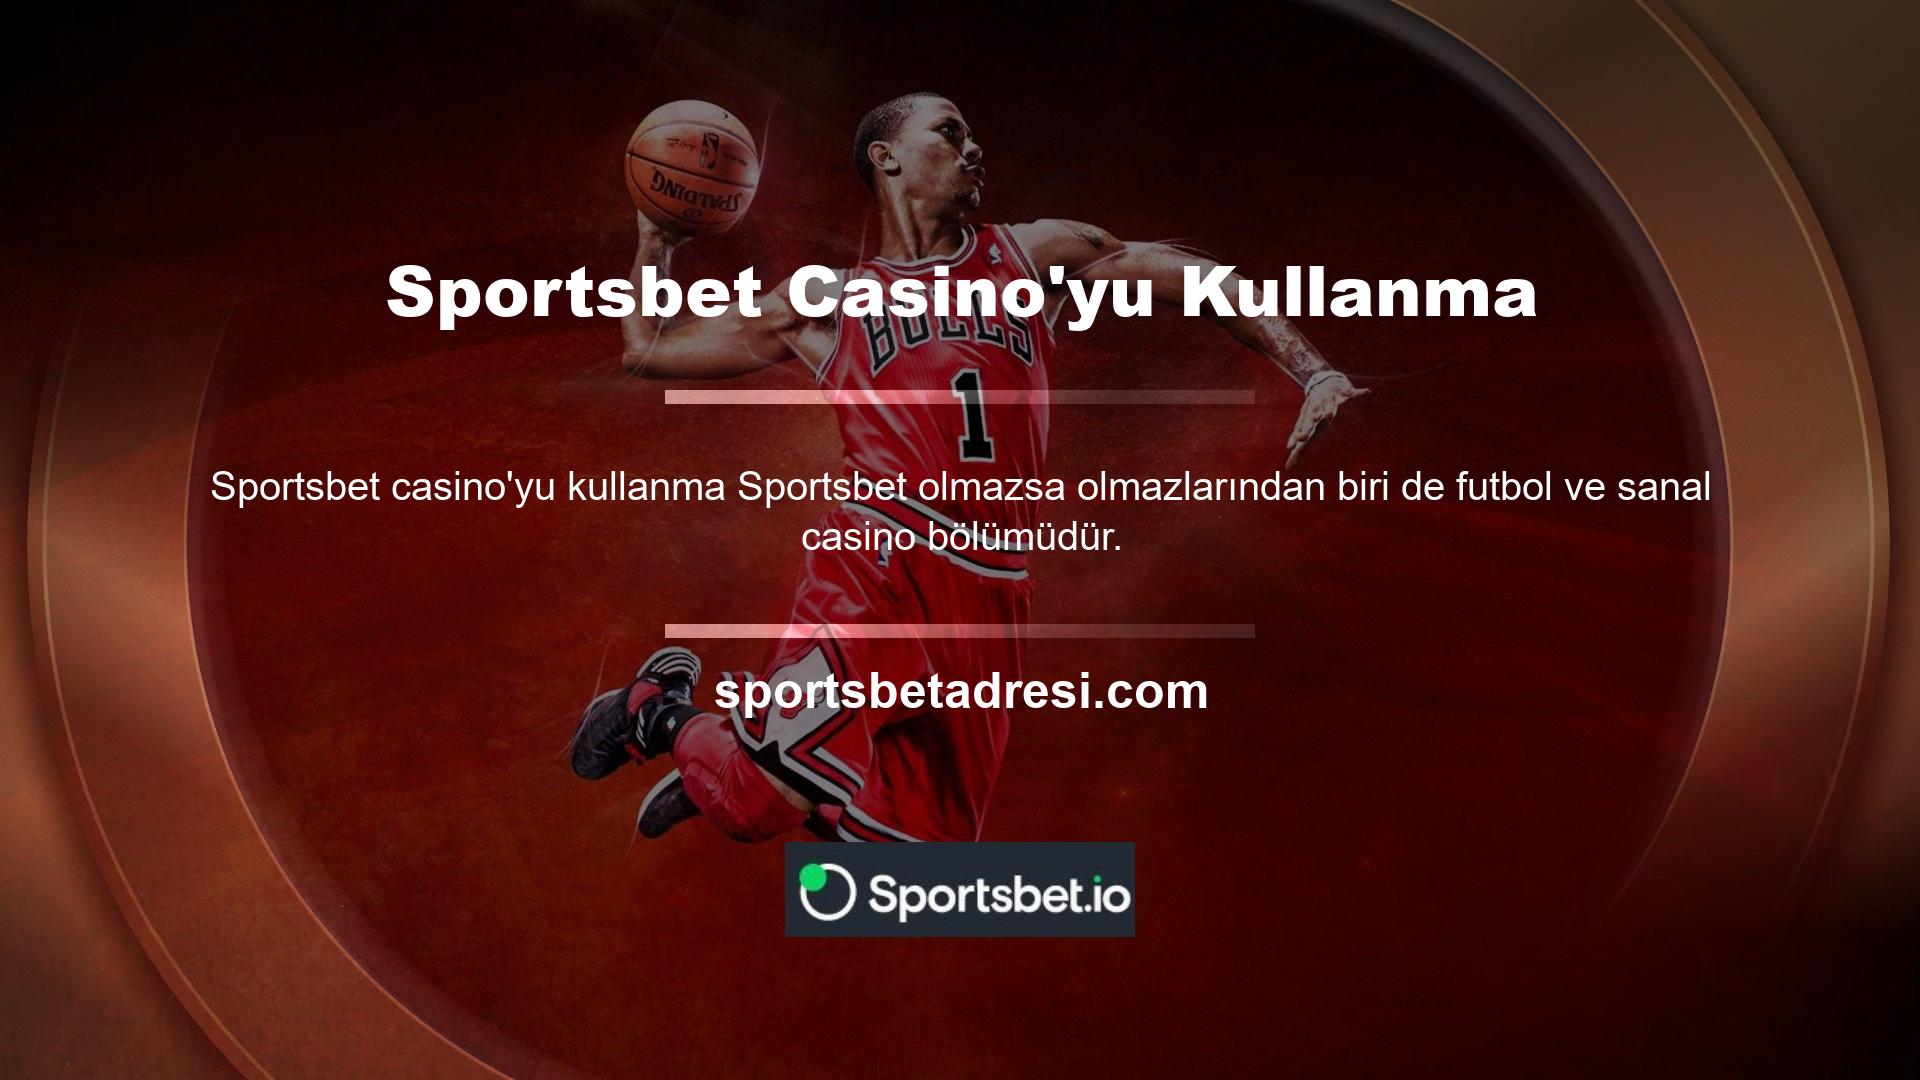 En çok kazandıran casinolardan biri olan Sportsbet, casino kalitesine ulaşmak ve oyun çeşitliliğini artırmak için birçok oyun firması ile iş birliği yapmaktadır